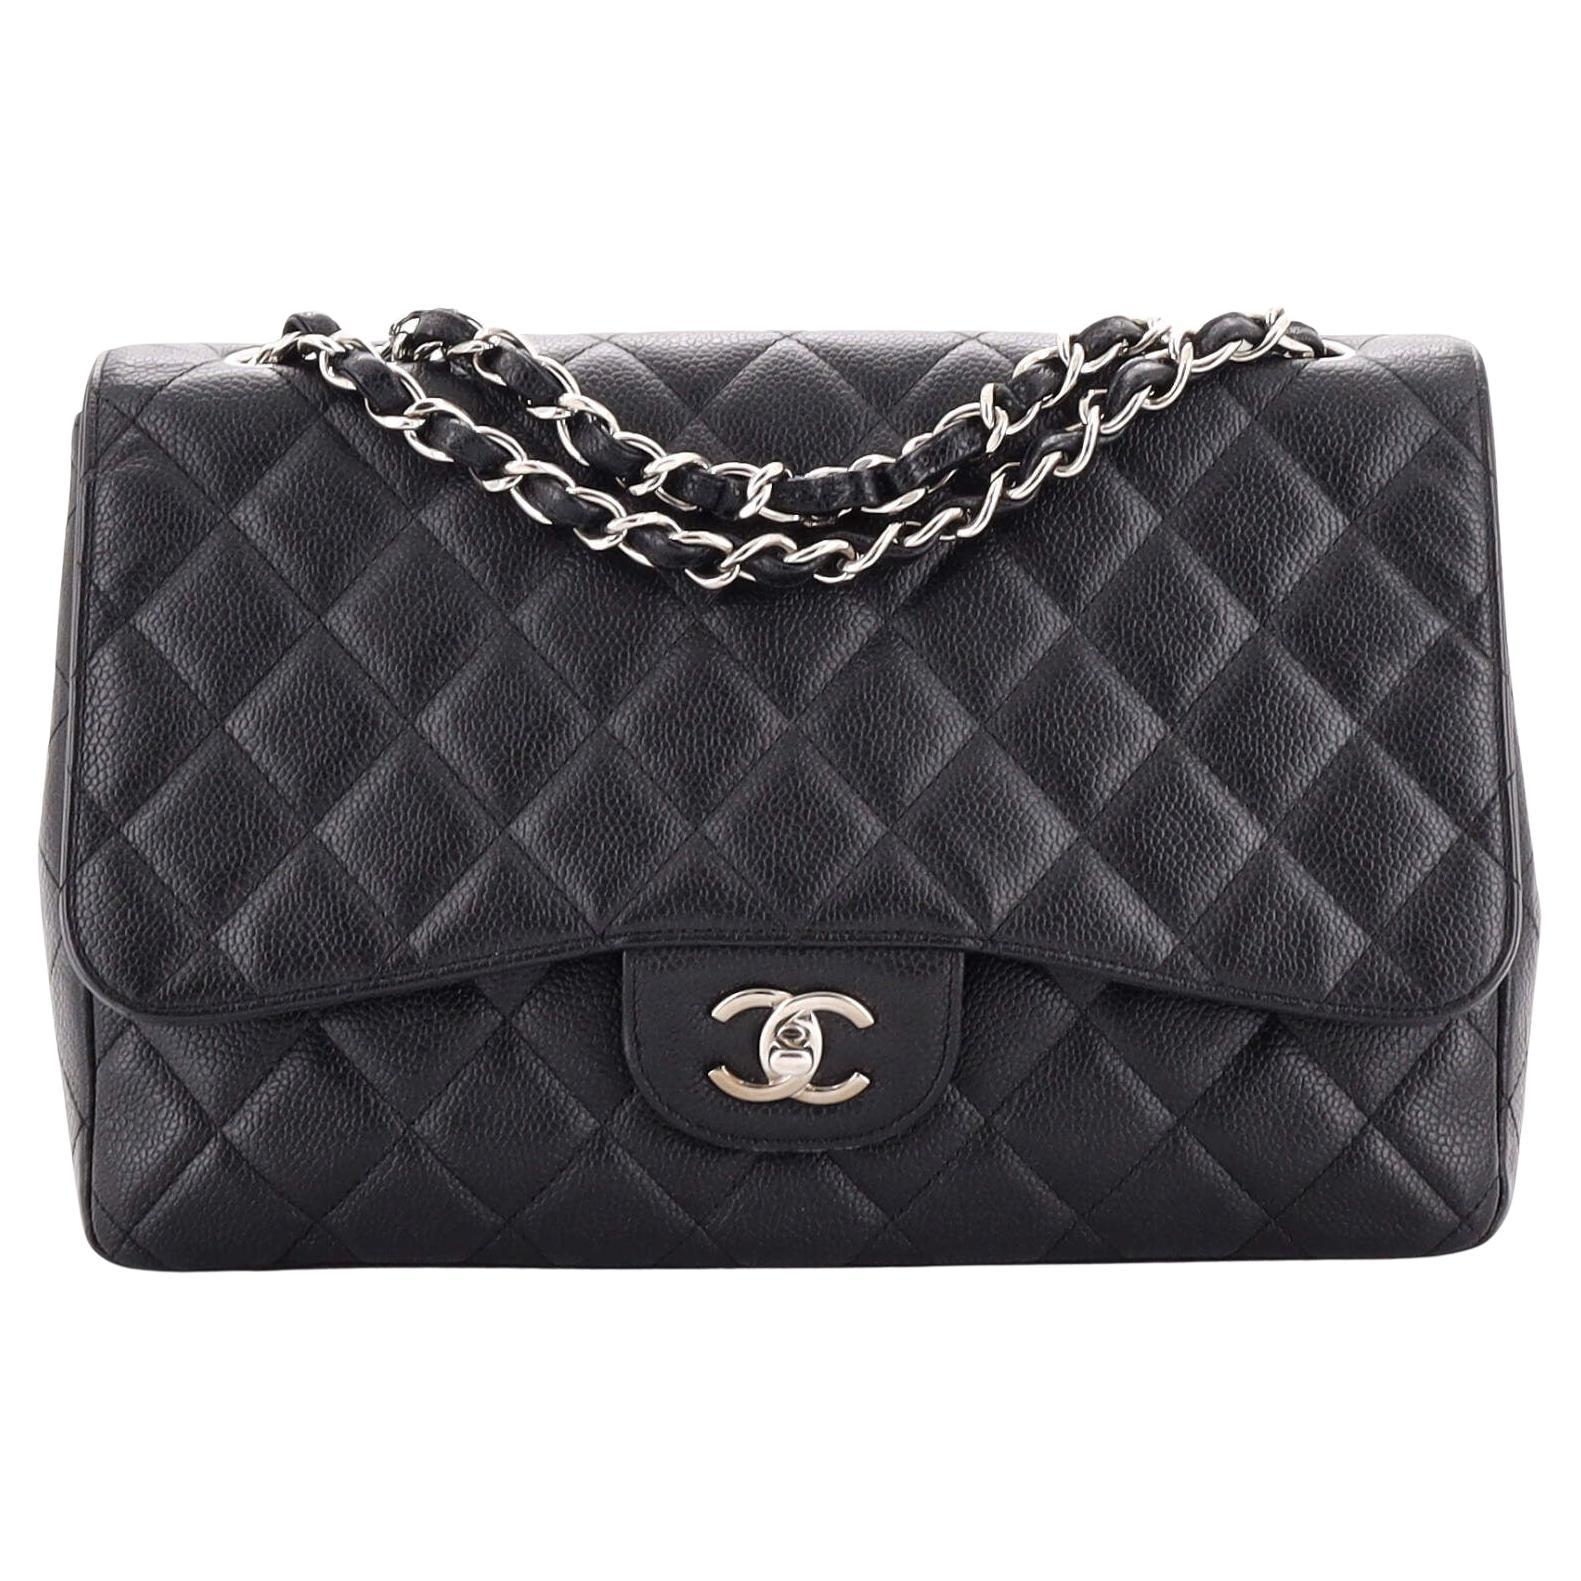 Chanel Vintage Chain Handbag - 685 For Sale on 1stDibs